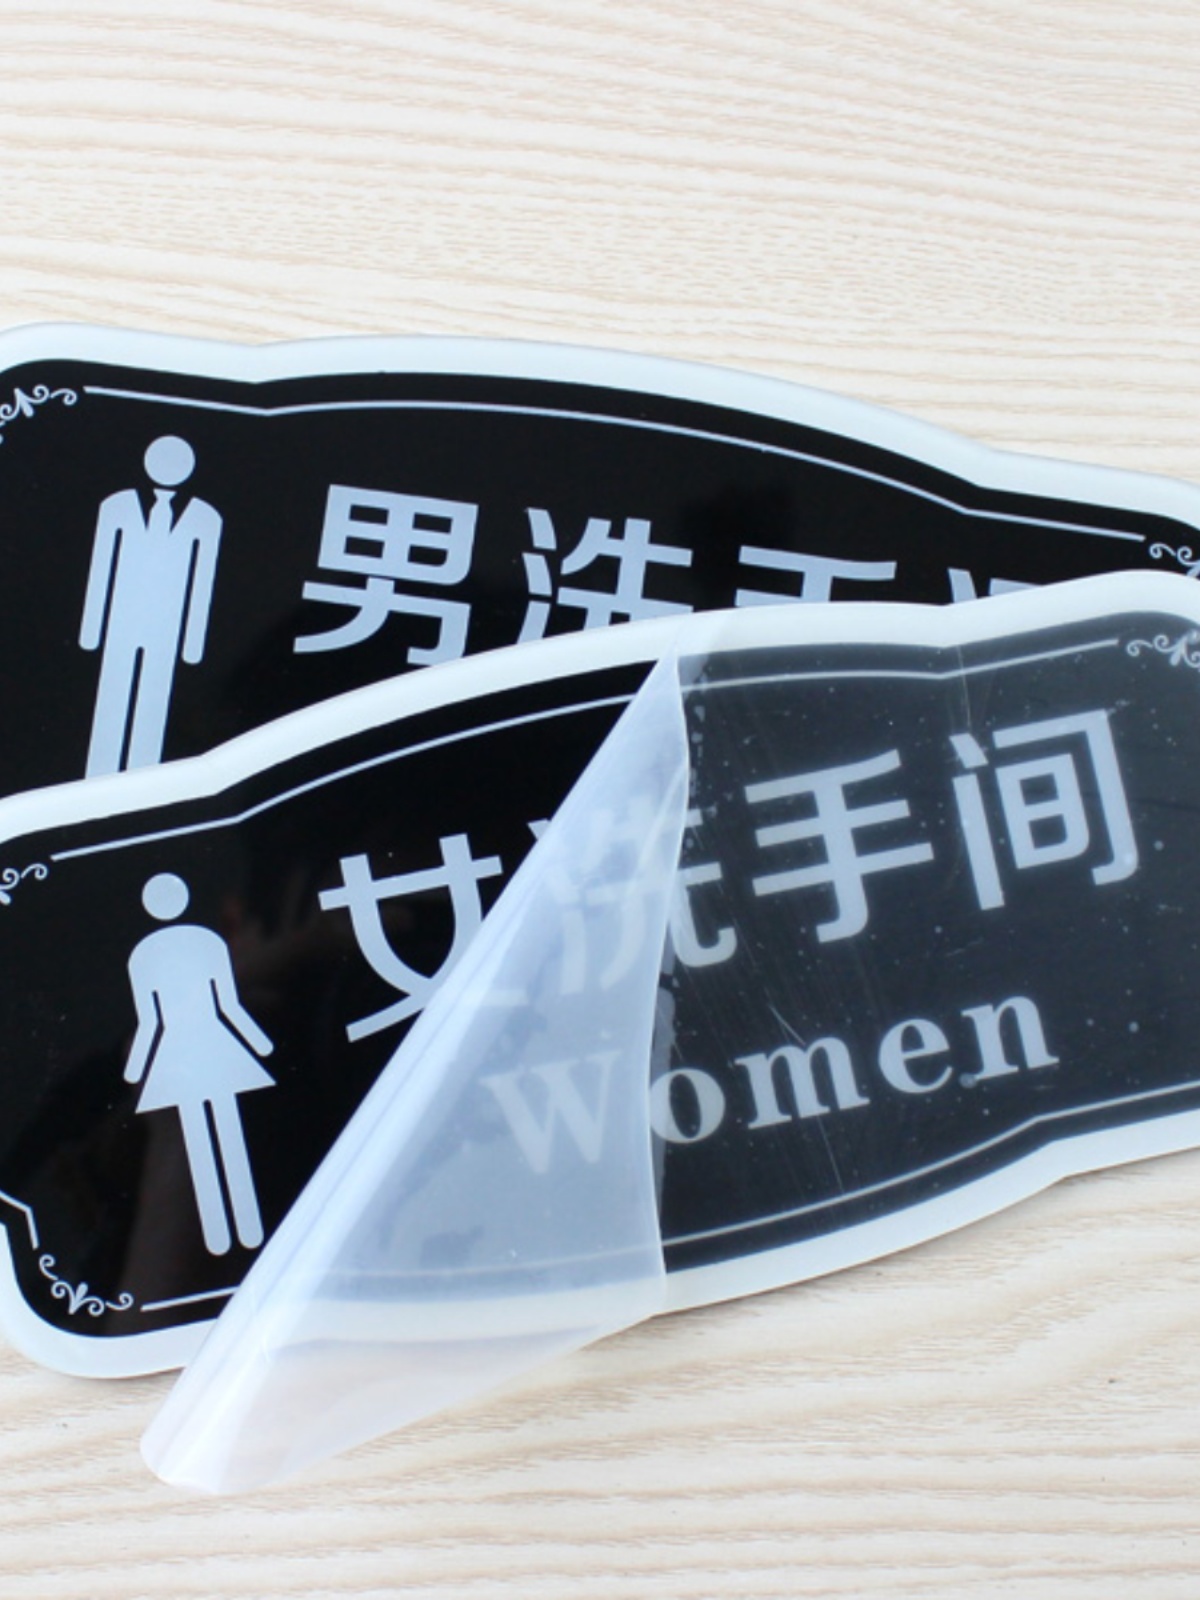 亚克力男女洗手间牌高档卫生间指示牌厕所门牌标识牌提示牌 墙贴